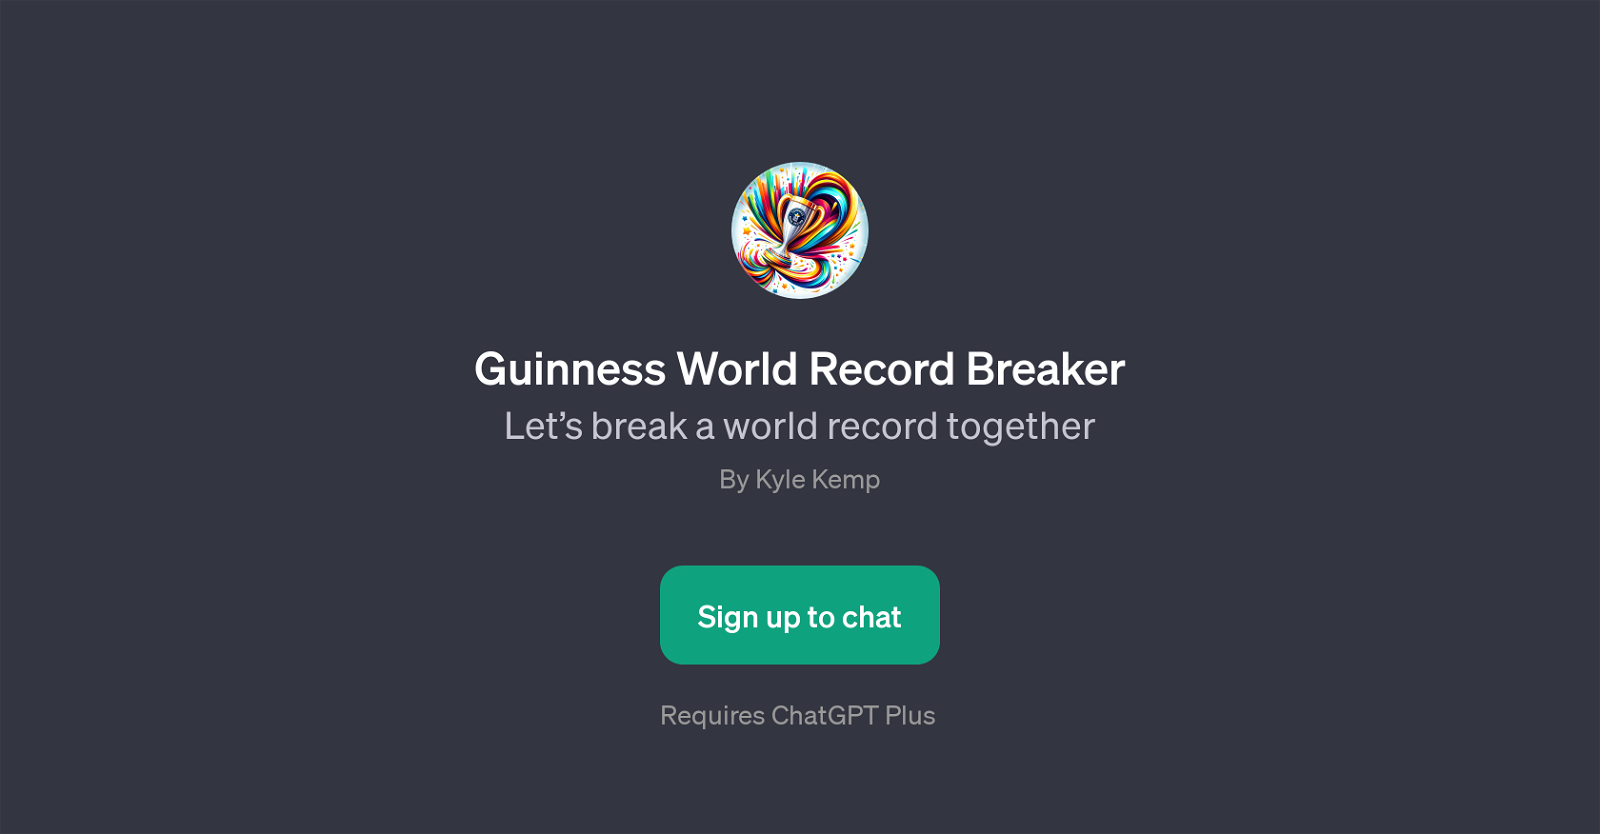 Guinness World Record Breaker website